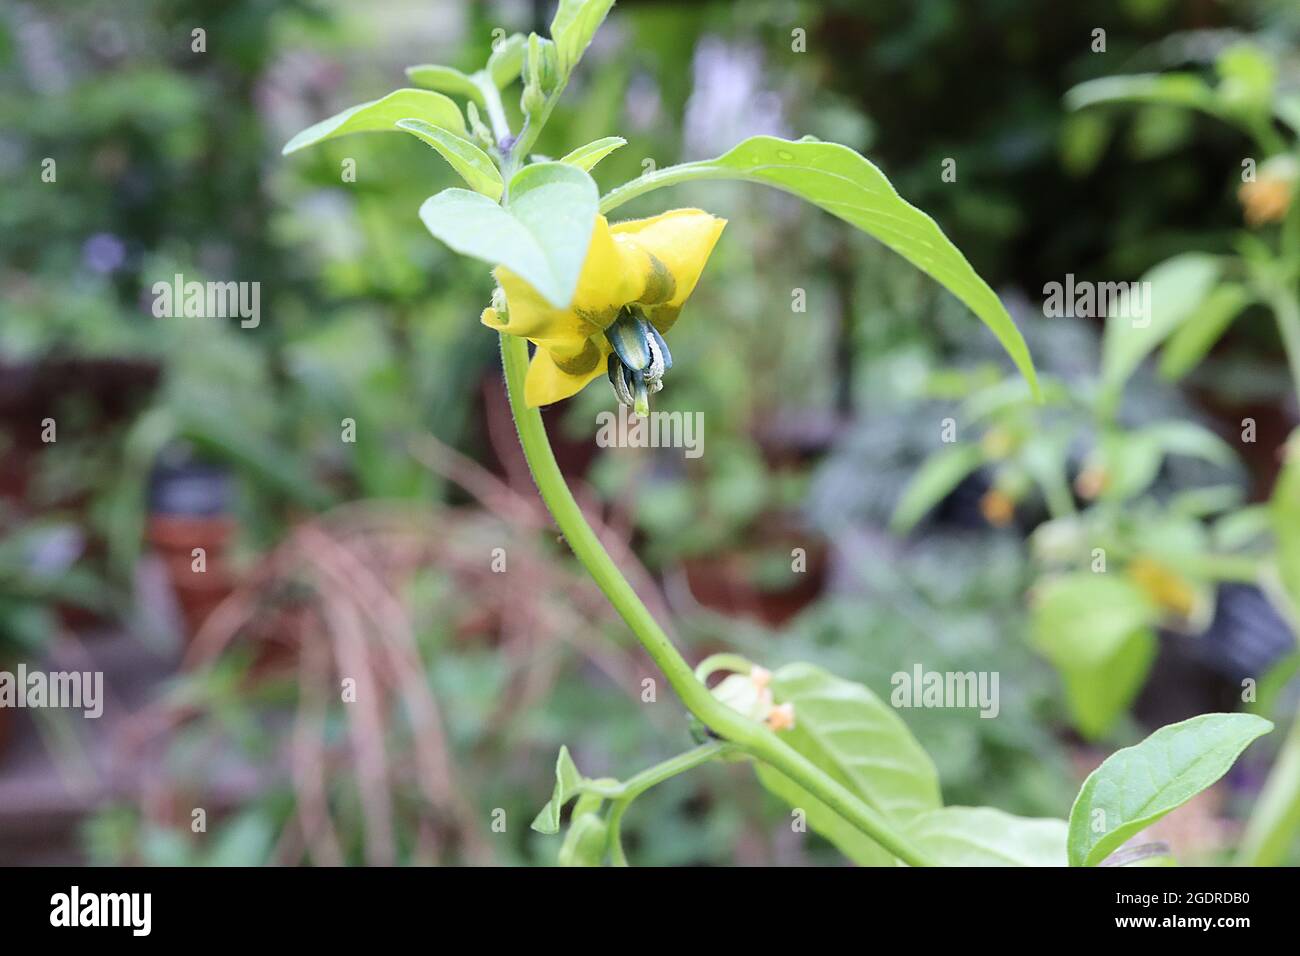 Physalis ixocarpa tomatillo – fiori gialli a faccia aperta con segni verdi marroni e foglie verdi chiare ovate, luglio, Inghilterra, Regno Unito Foto Stock